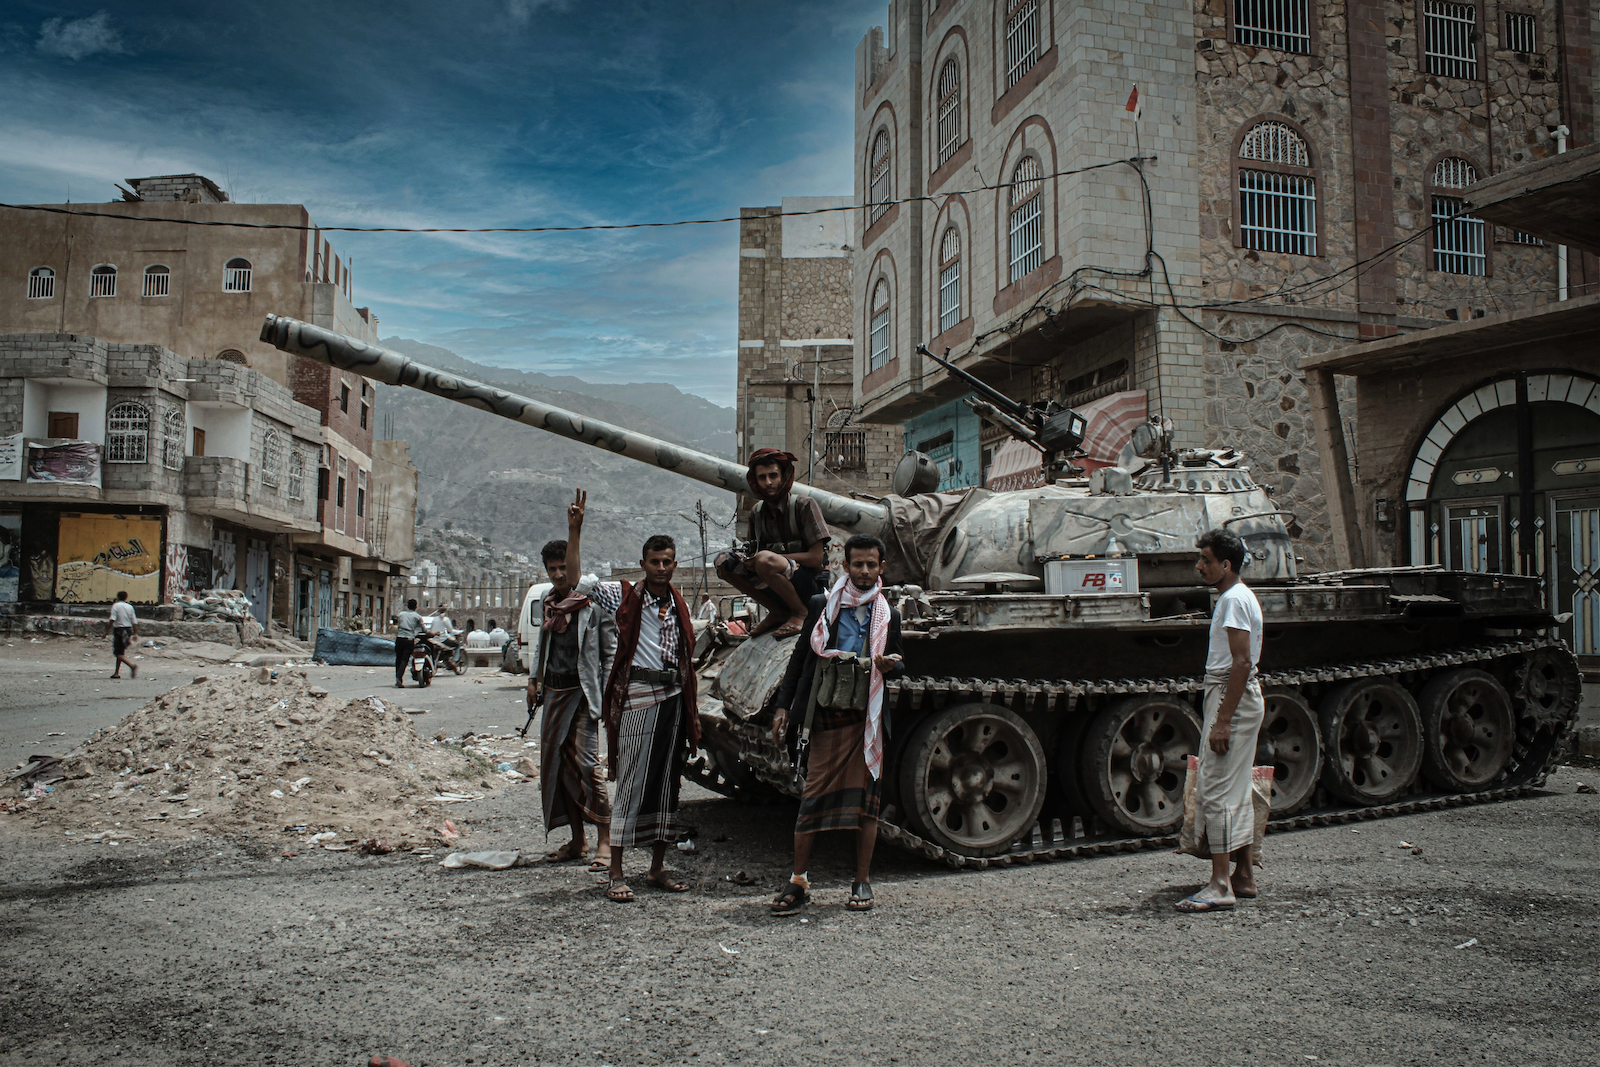 Houthis rebels in Yemen